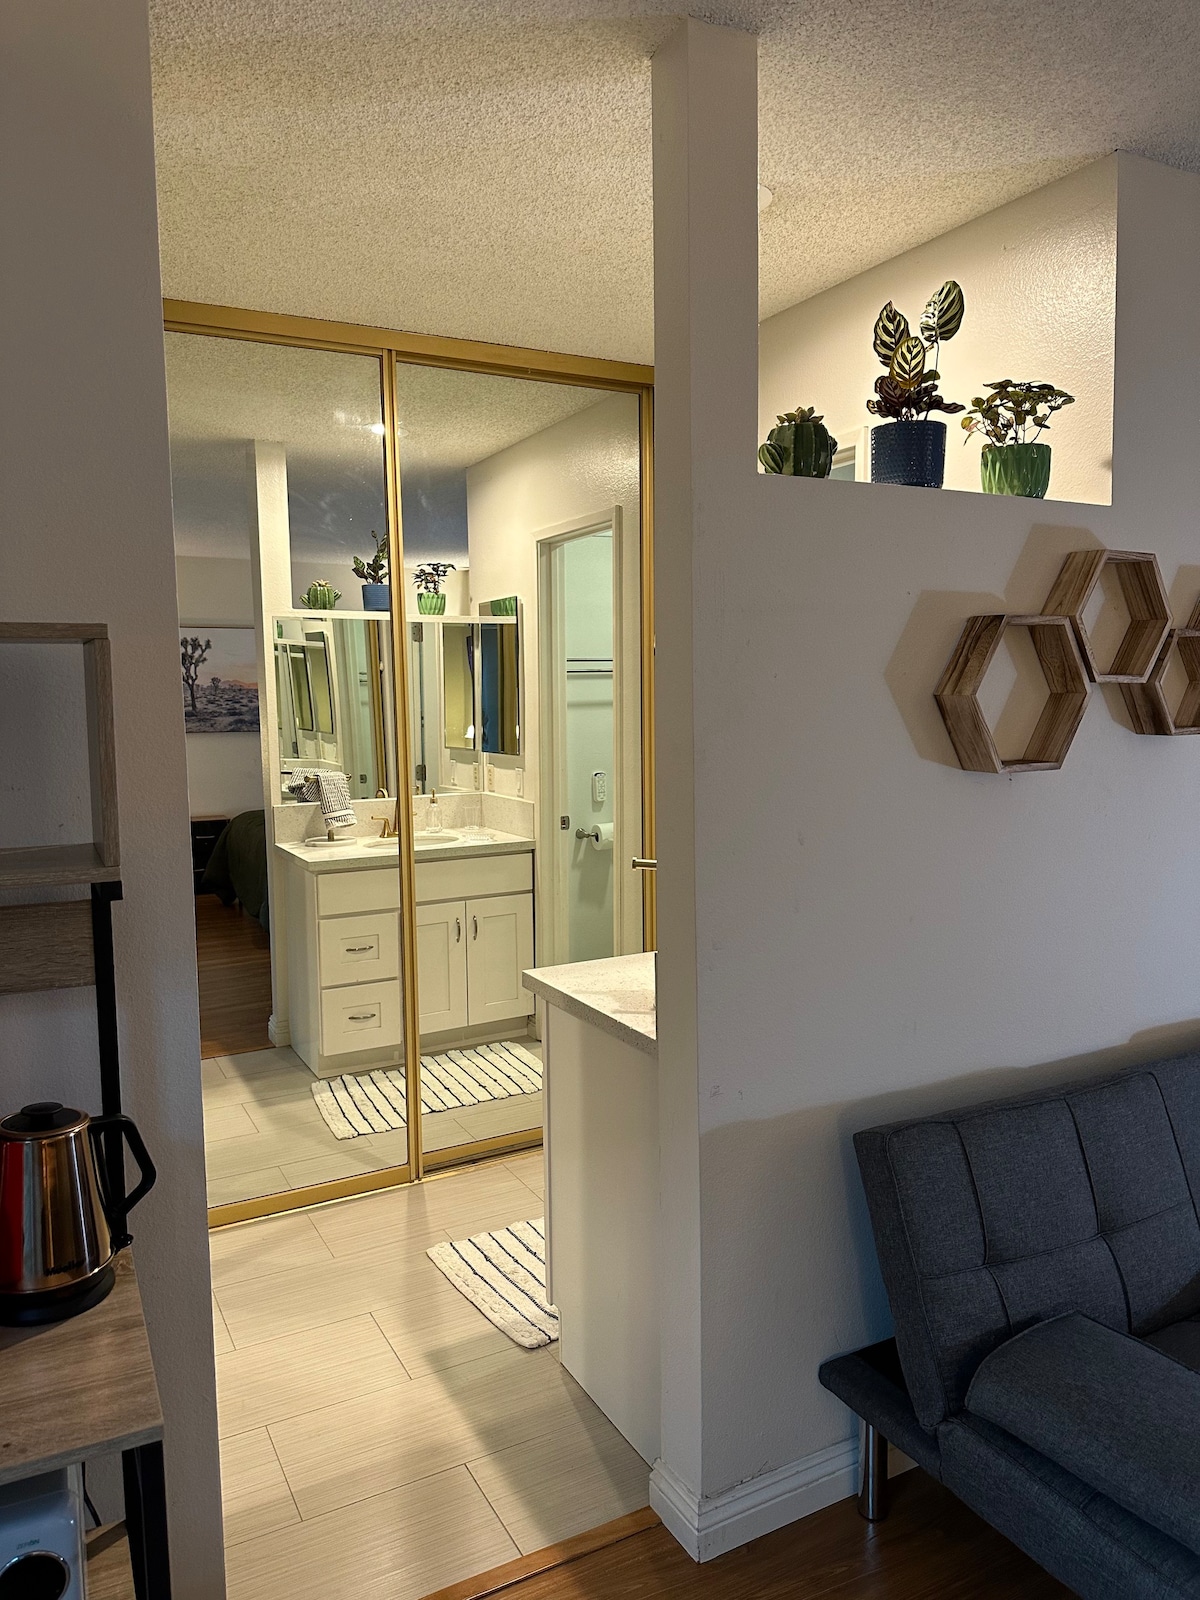 Private room/studio, bath & entrance